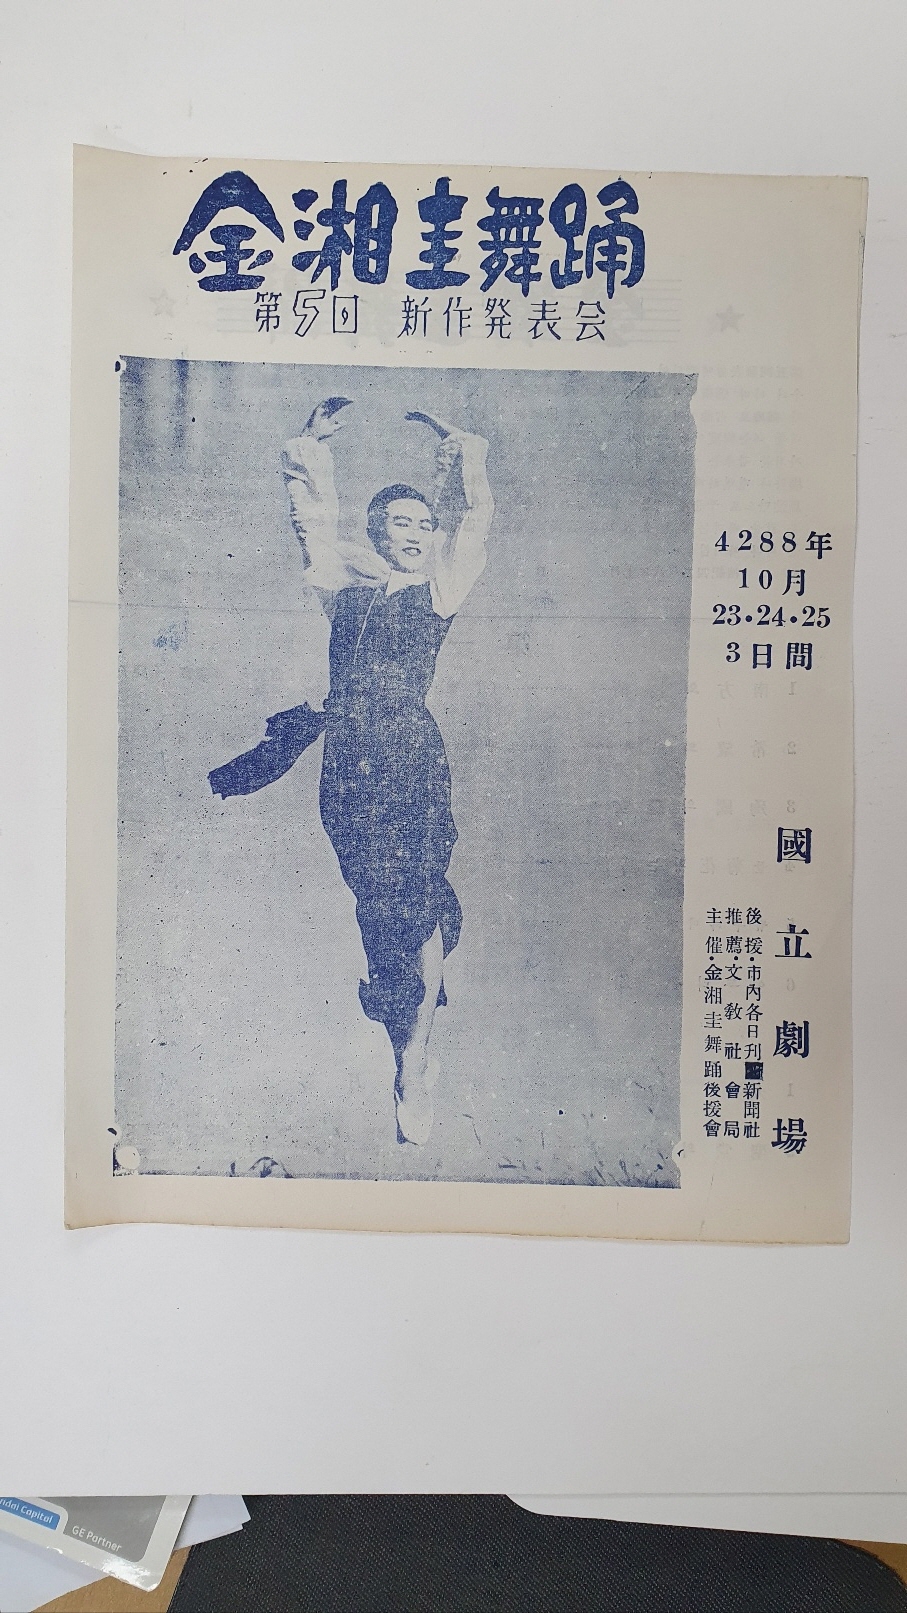 [제5회 김상규(金湘圭)무용 신작발표회] 팸플릿, 1955